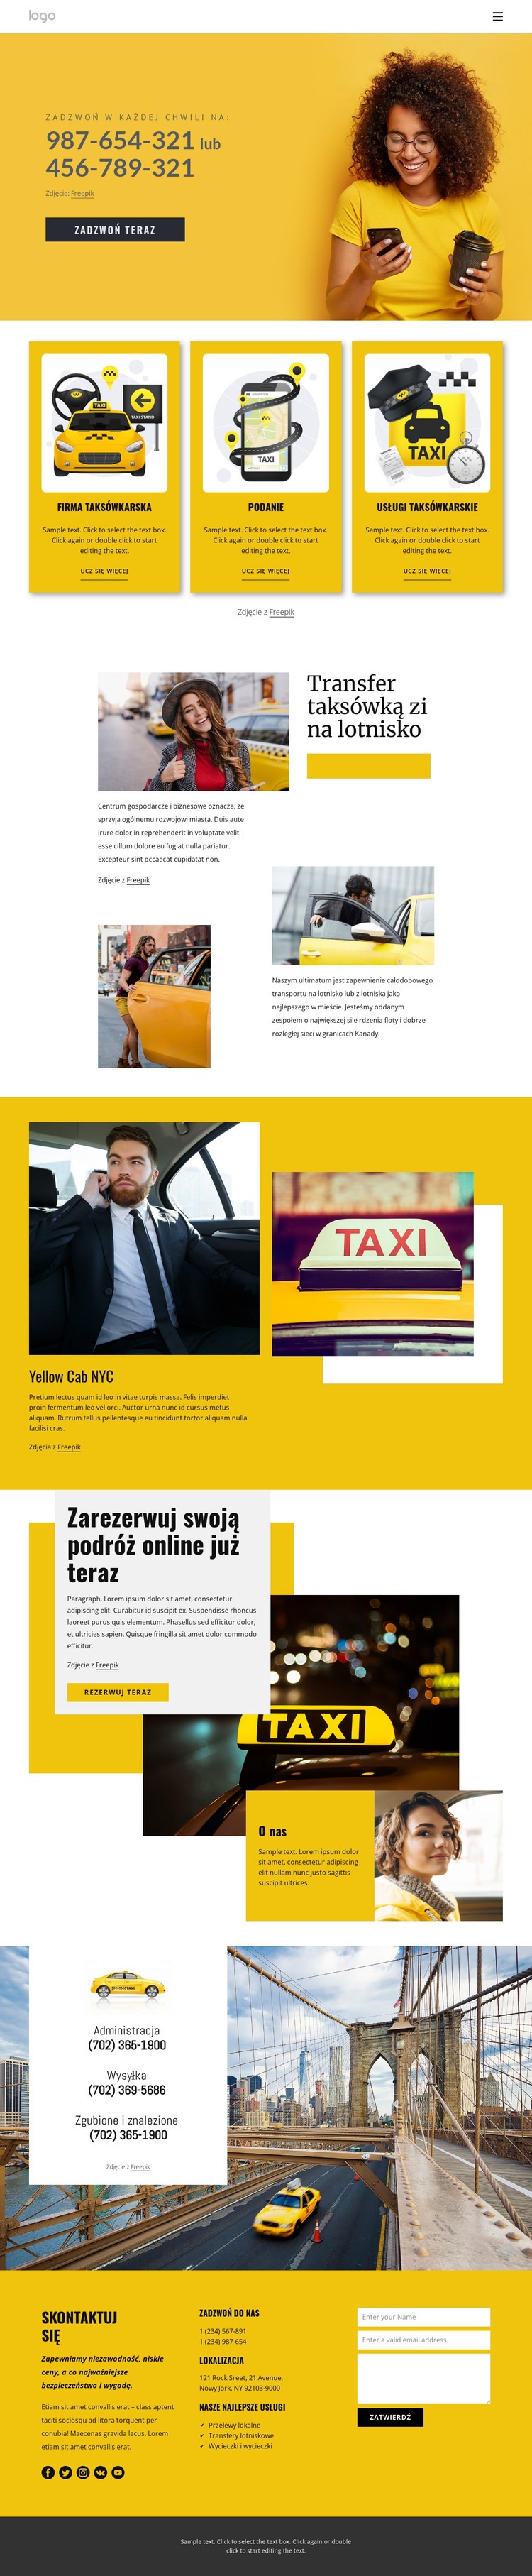 Jakość usług taksówkowych Szablony do tworzenia witryn internetowych